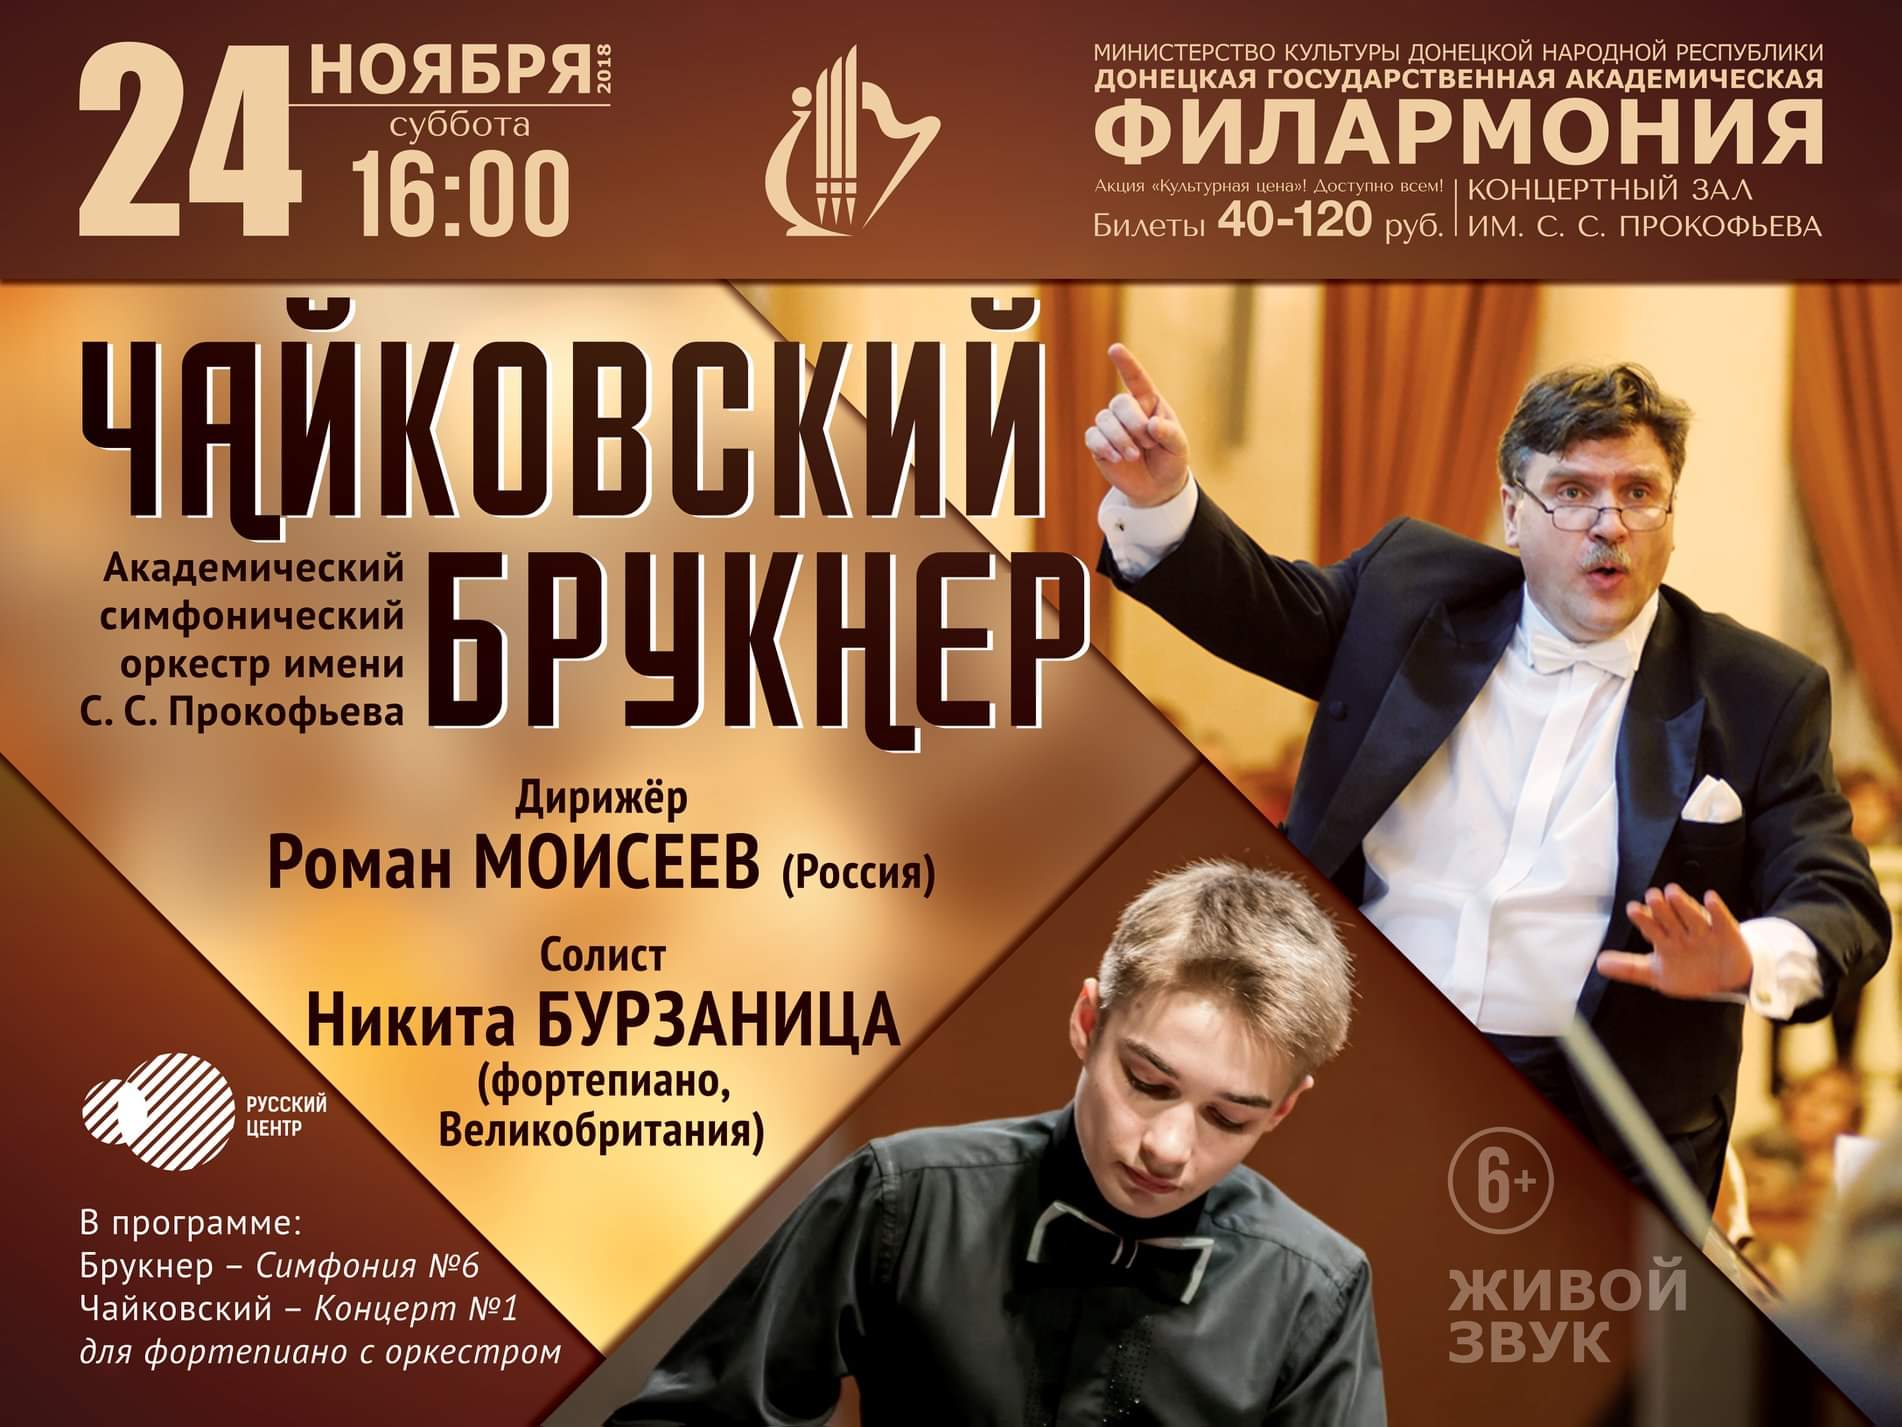 Концерт в Донецкой филармонии